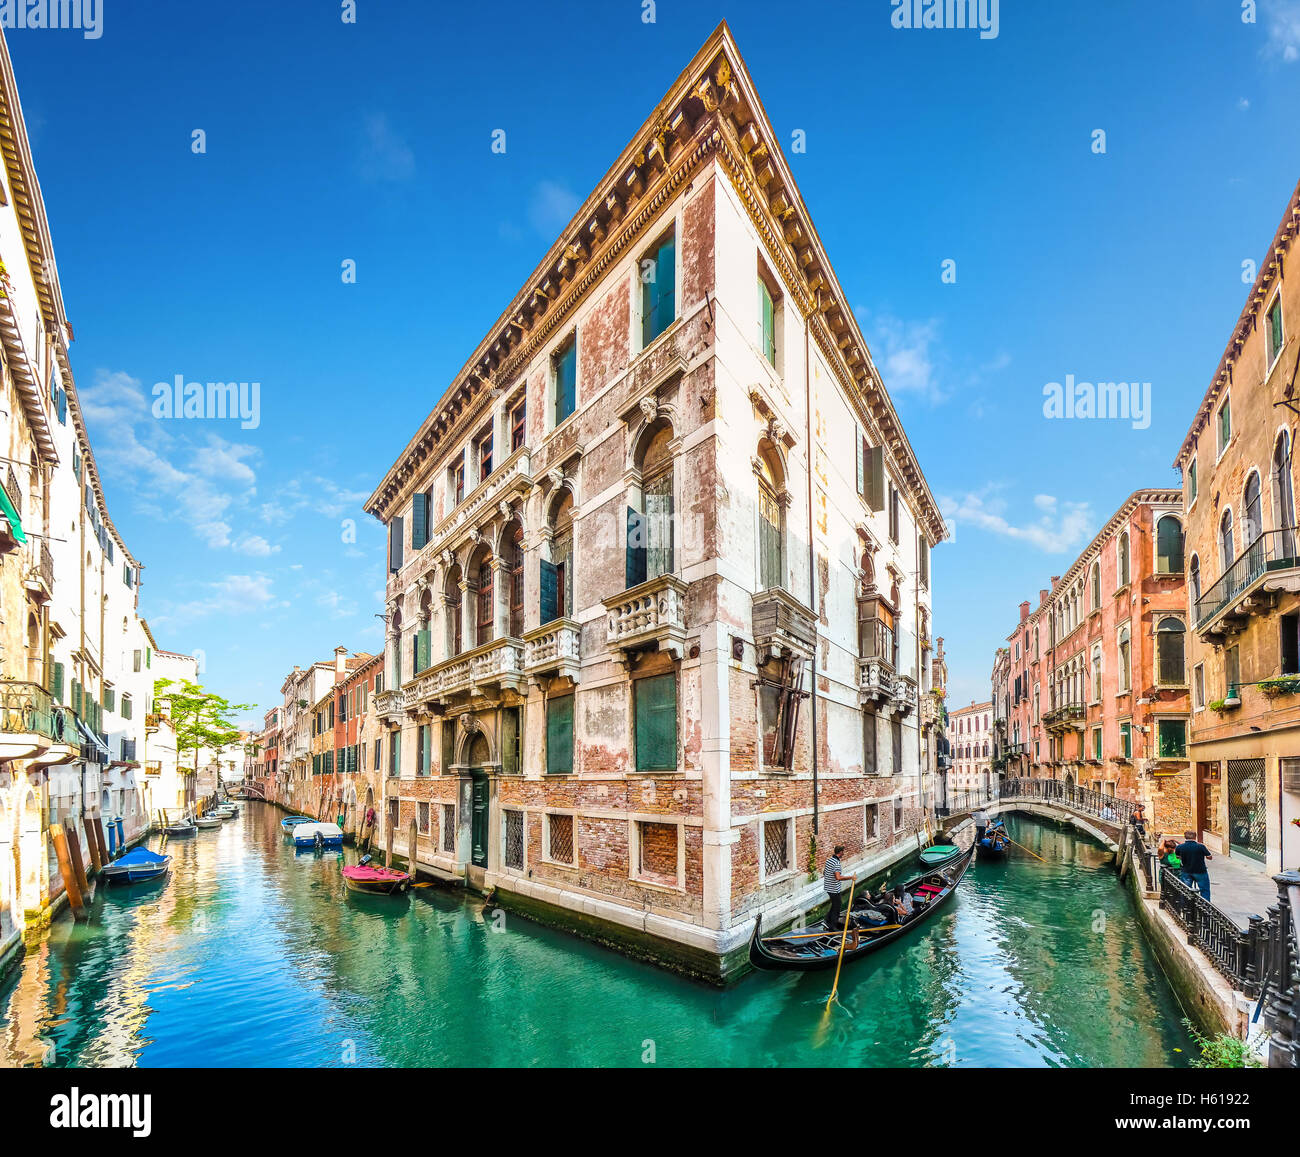 Typische romantische Szene mit traditionellen Gondeln auf Kanälen zwischen historischen venezianischen Gebäude in Venedig, Italien Stockfoto